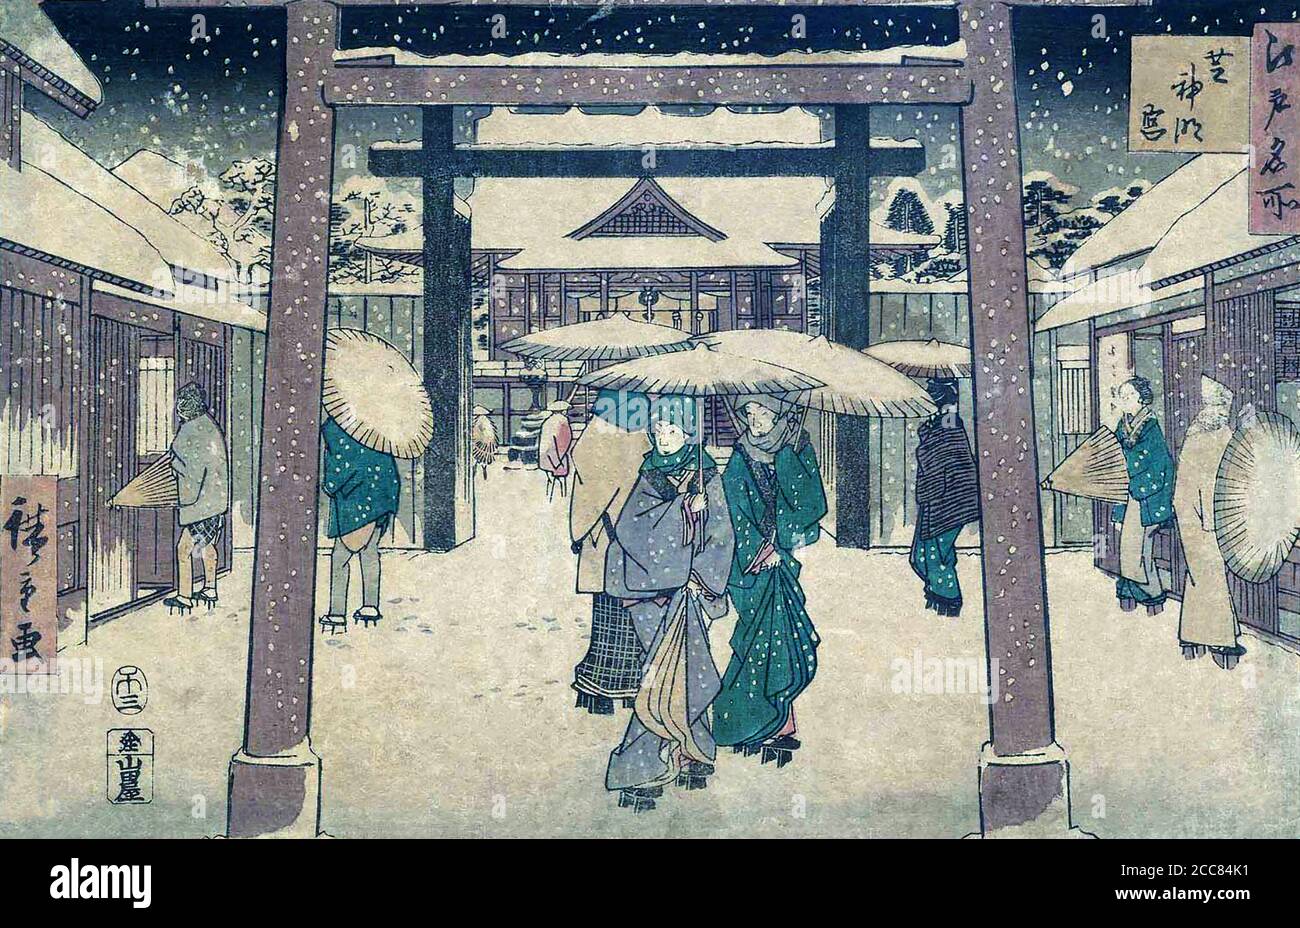 Giappone: Santuario di Shinmei. Dalla serie 'Famous Places in Edo' di Utagawa Hiroshige i (1797 – 12 ottobre 1858), 1858. Utagawa Hiroshige era un artista giapponese ukiyo-e, e uno degli ultimi grandi artisti di quella tradizione. Fu anche chiamato Andō Hiroshige, e dal nome d'arte di Ichiyūsai Hiroshige. Tra i numerosi capolavori, Hiroshige è particolarmente ricordato per le 'sessantanove stazioni del Kisokaidō' (1834-1842) e le 'trentasei viste del Monte Fuji' (1852-1858). Foto Stock